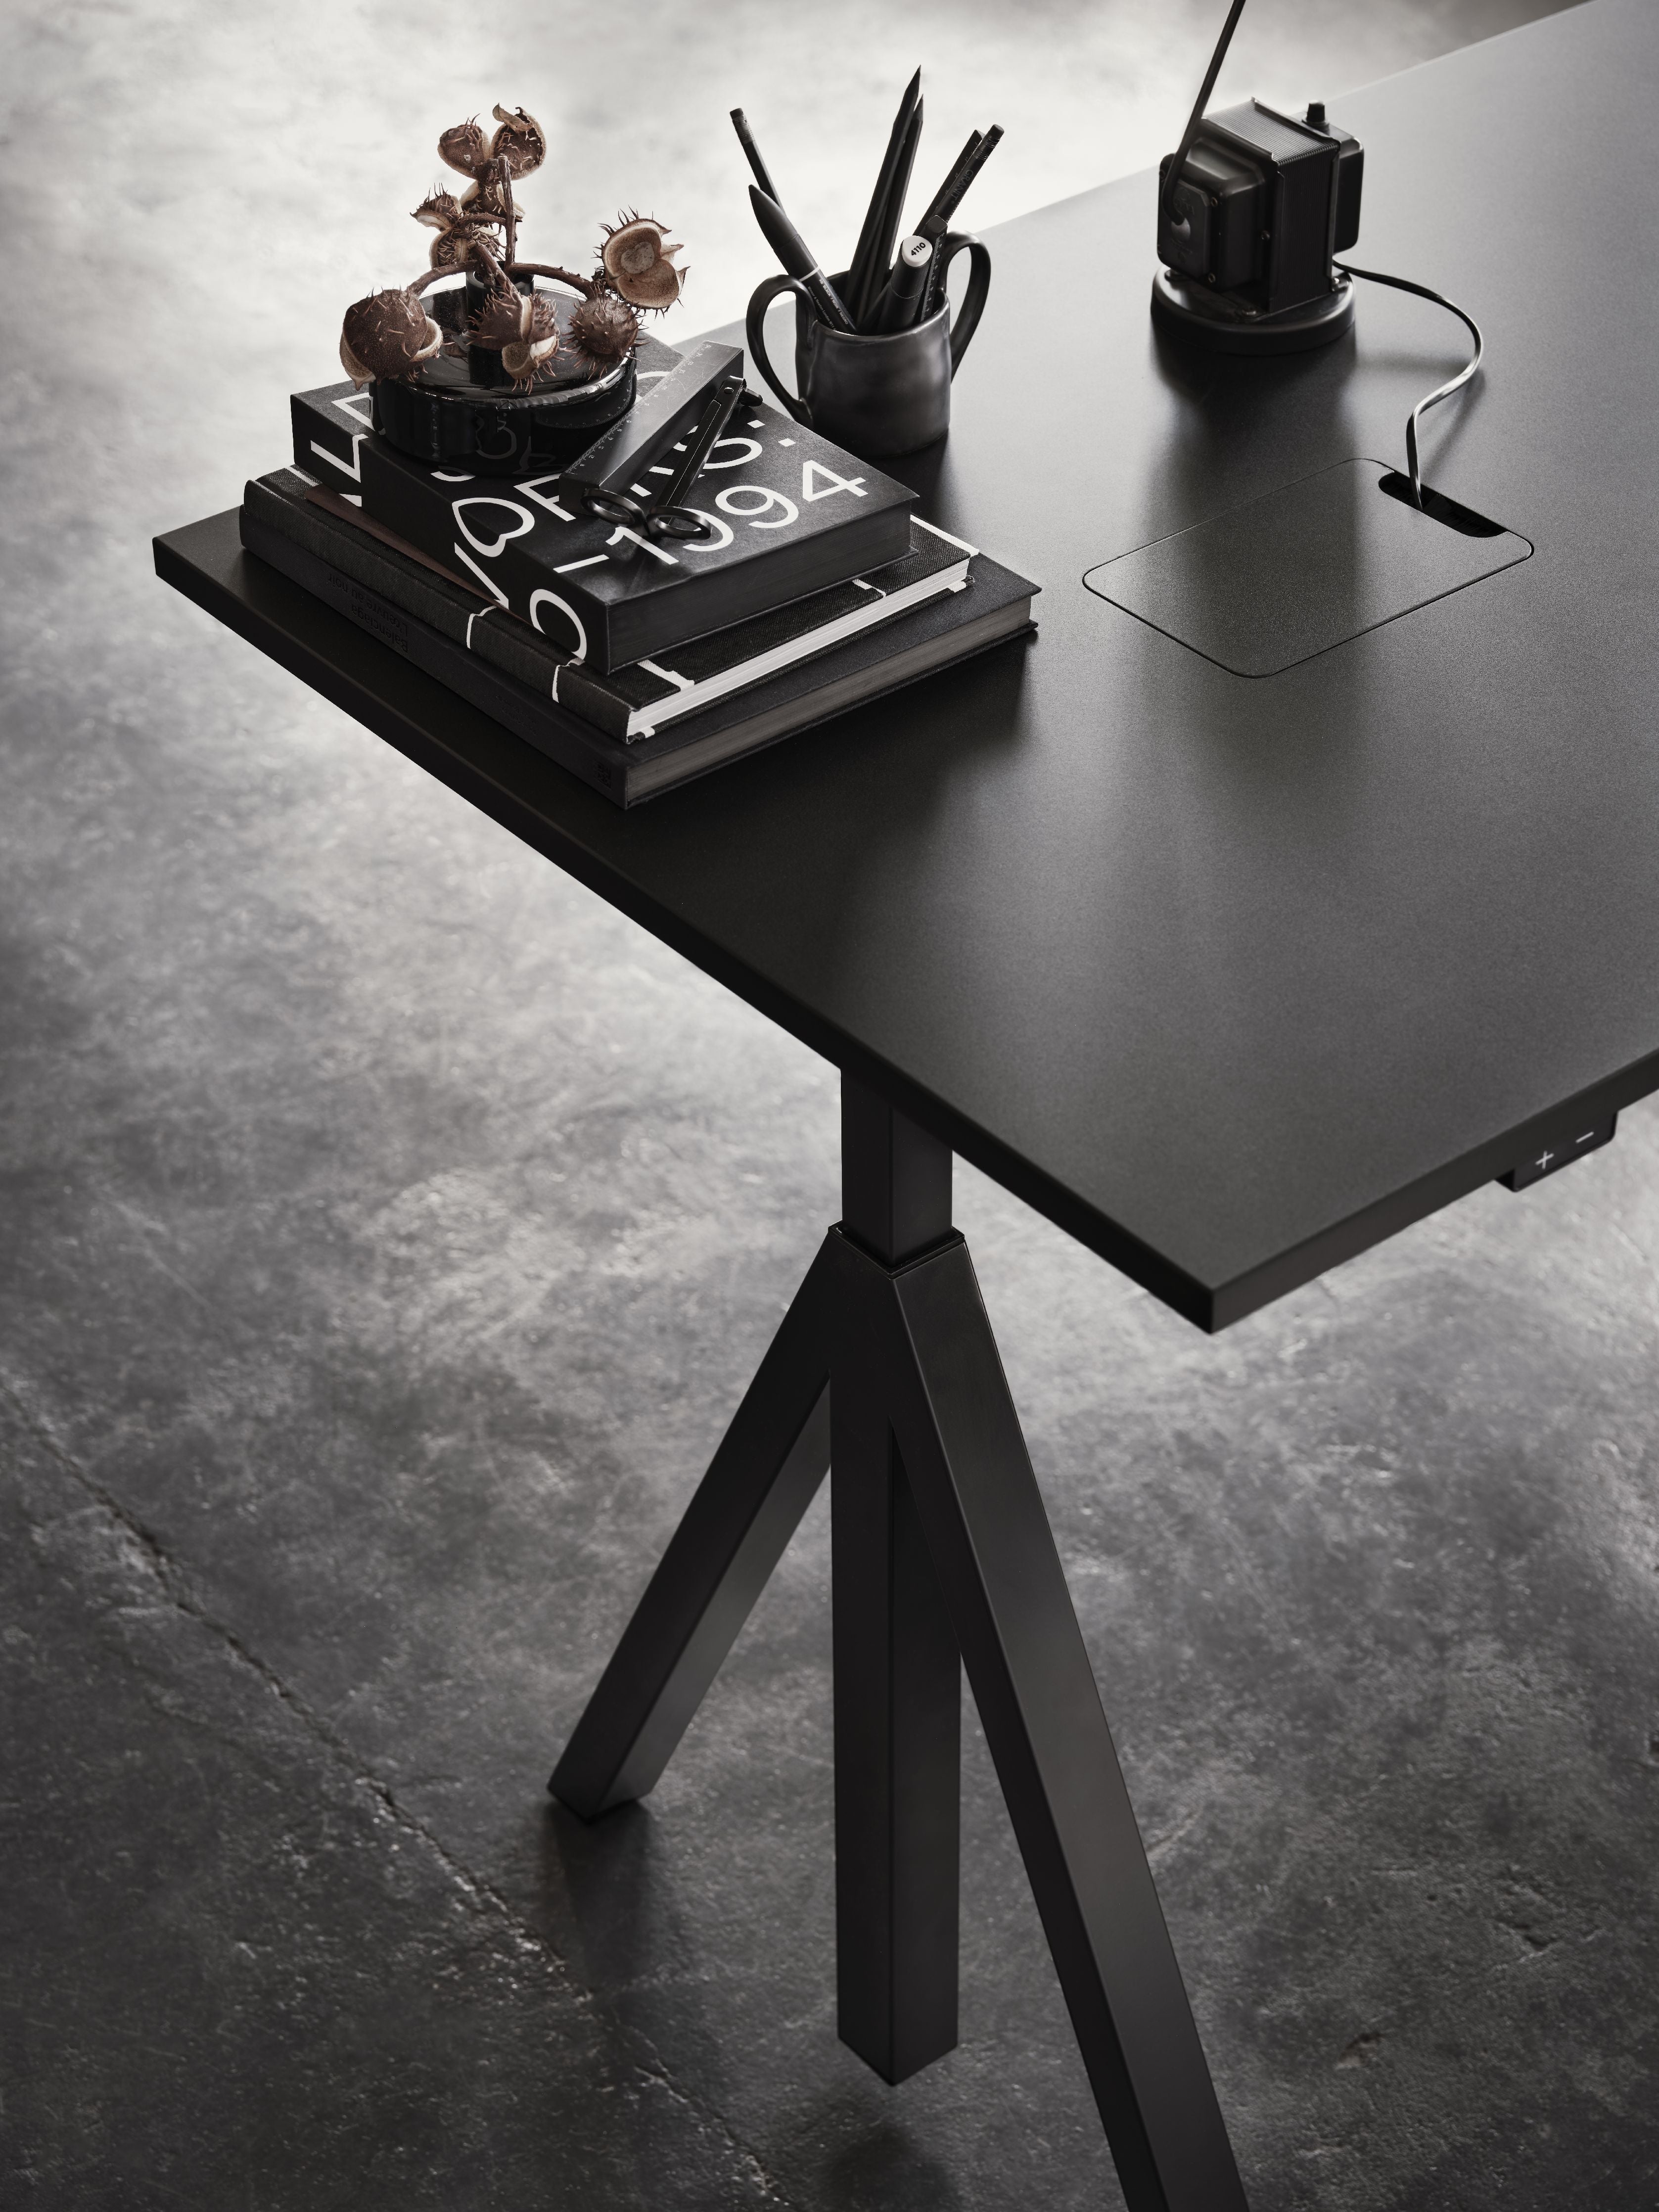 String Furniture Works Work Table 78x140 cm, černá/černá